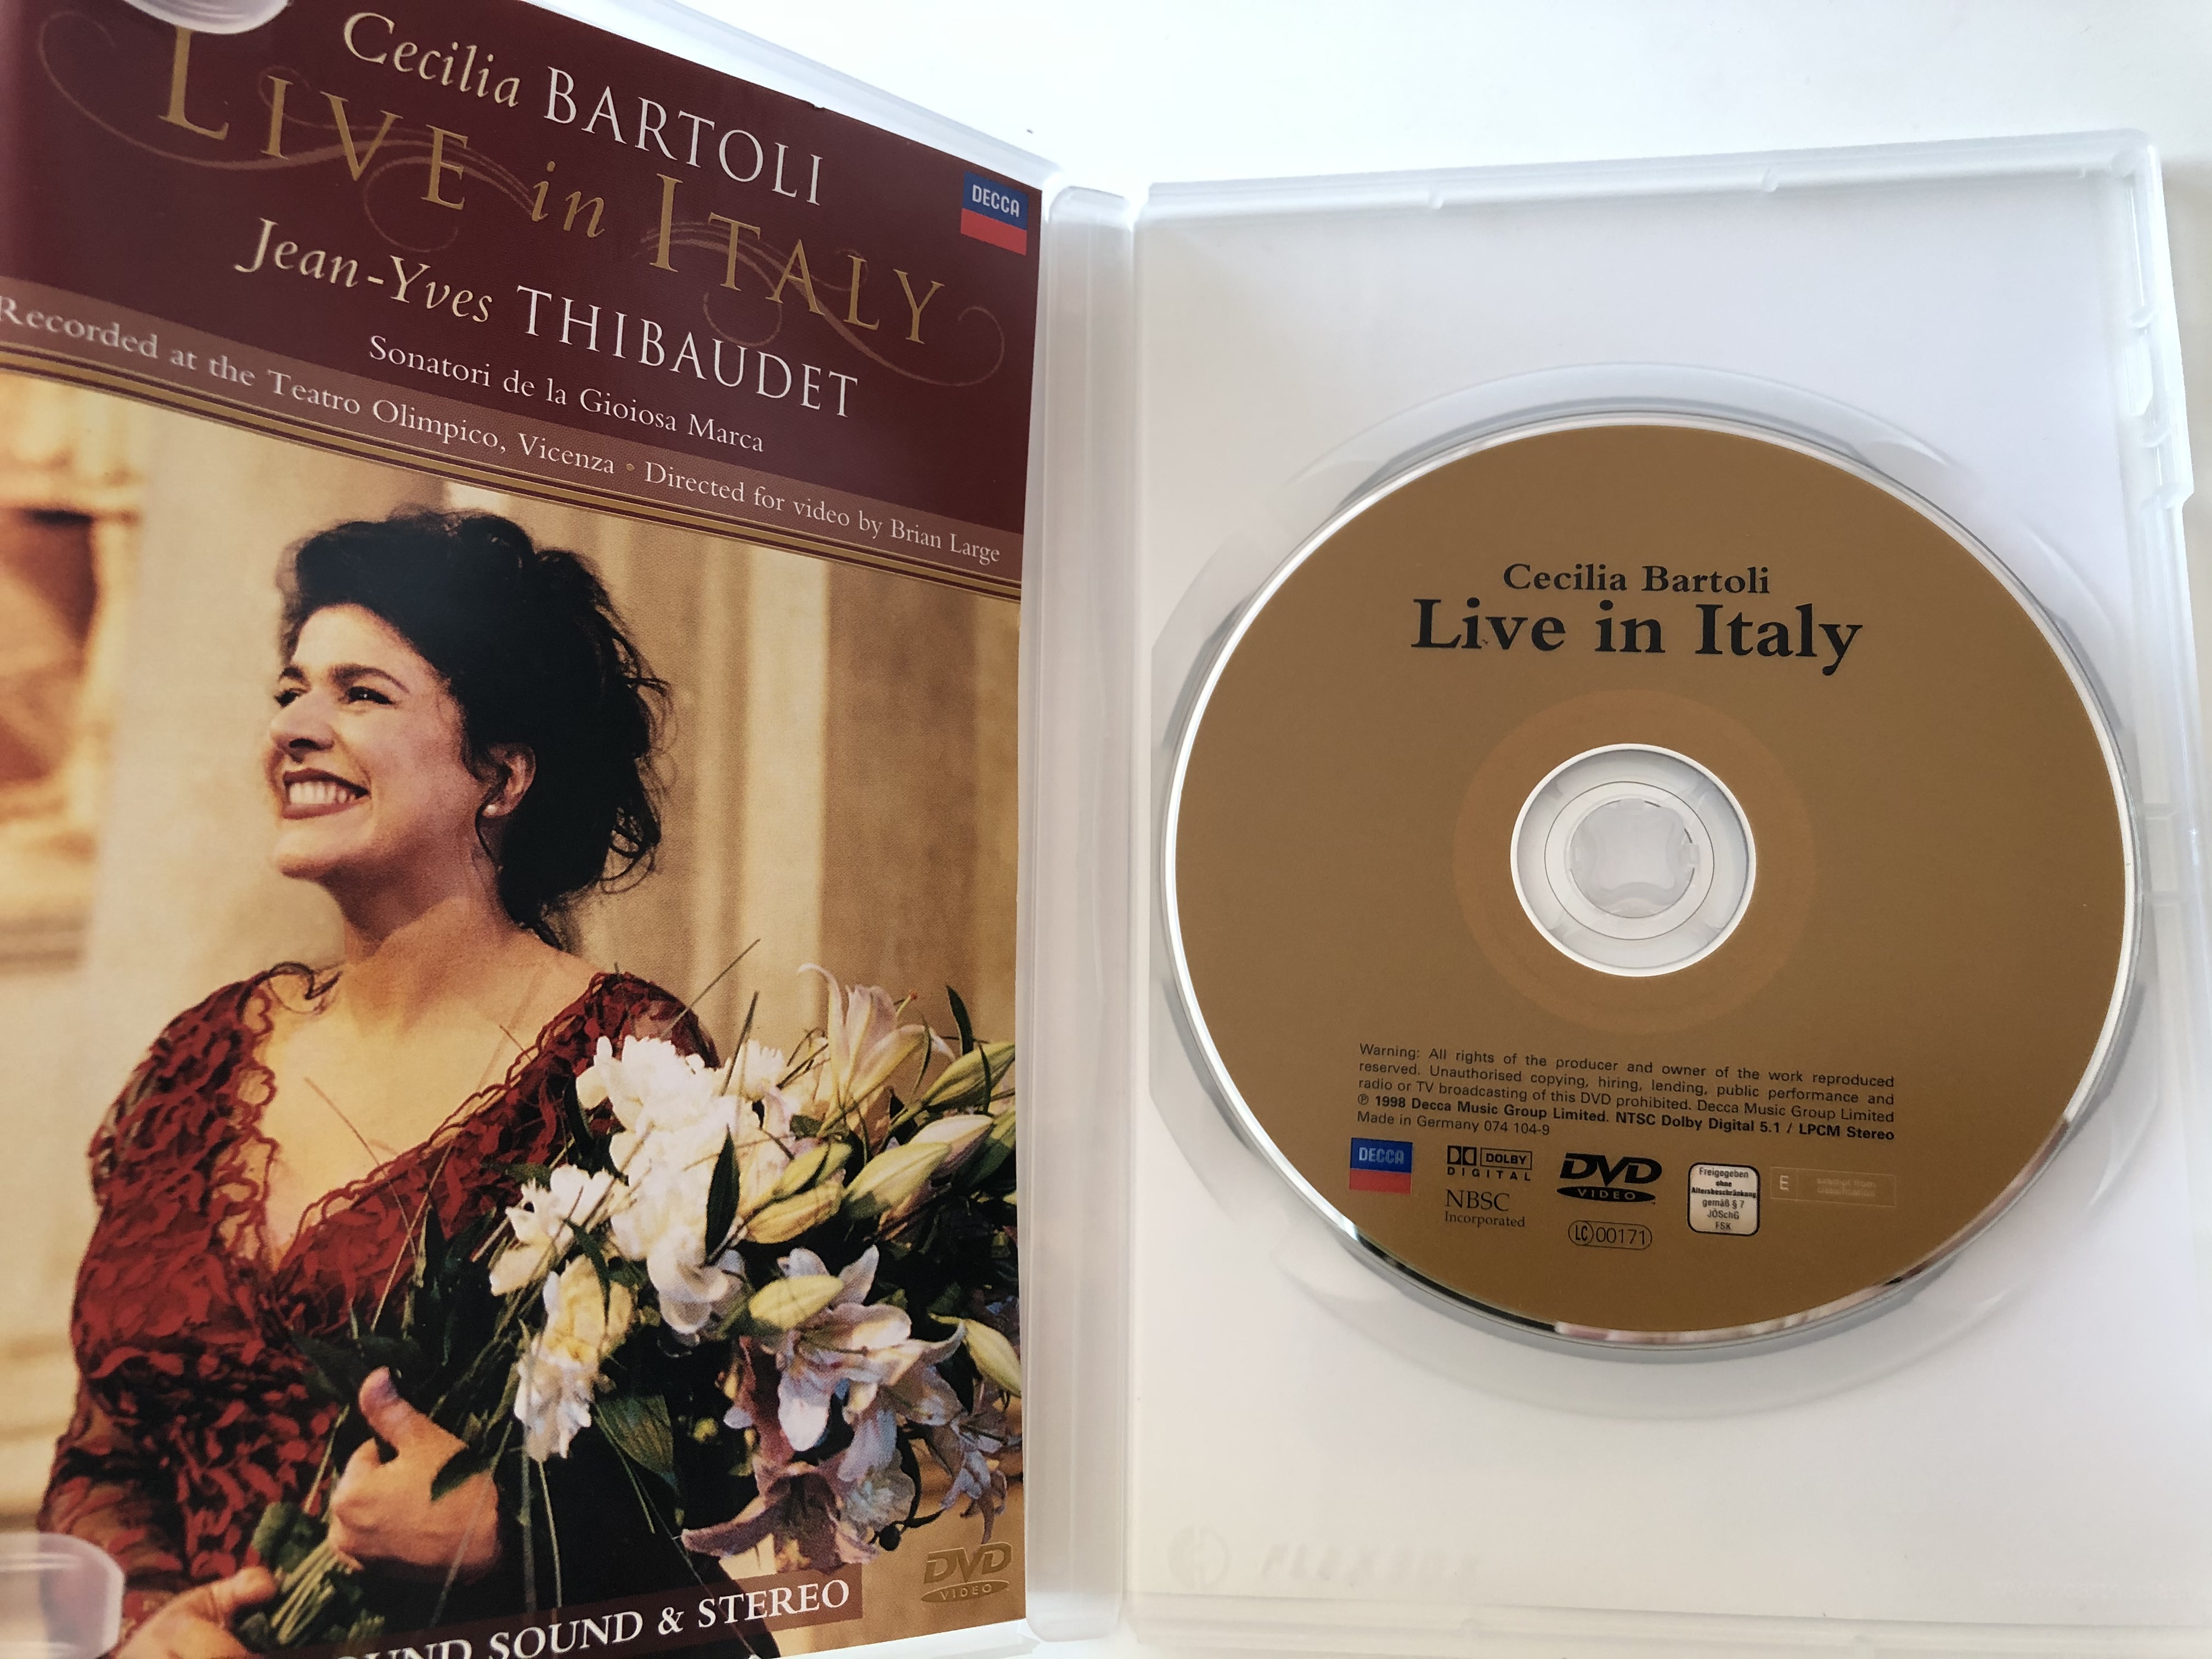 cecilia-bartoli-live-in-italy-dvd-1998-jean-yves-thibaudet-2.jpg